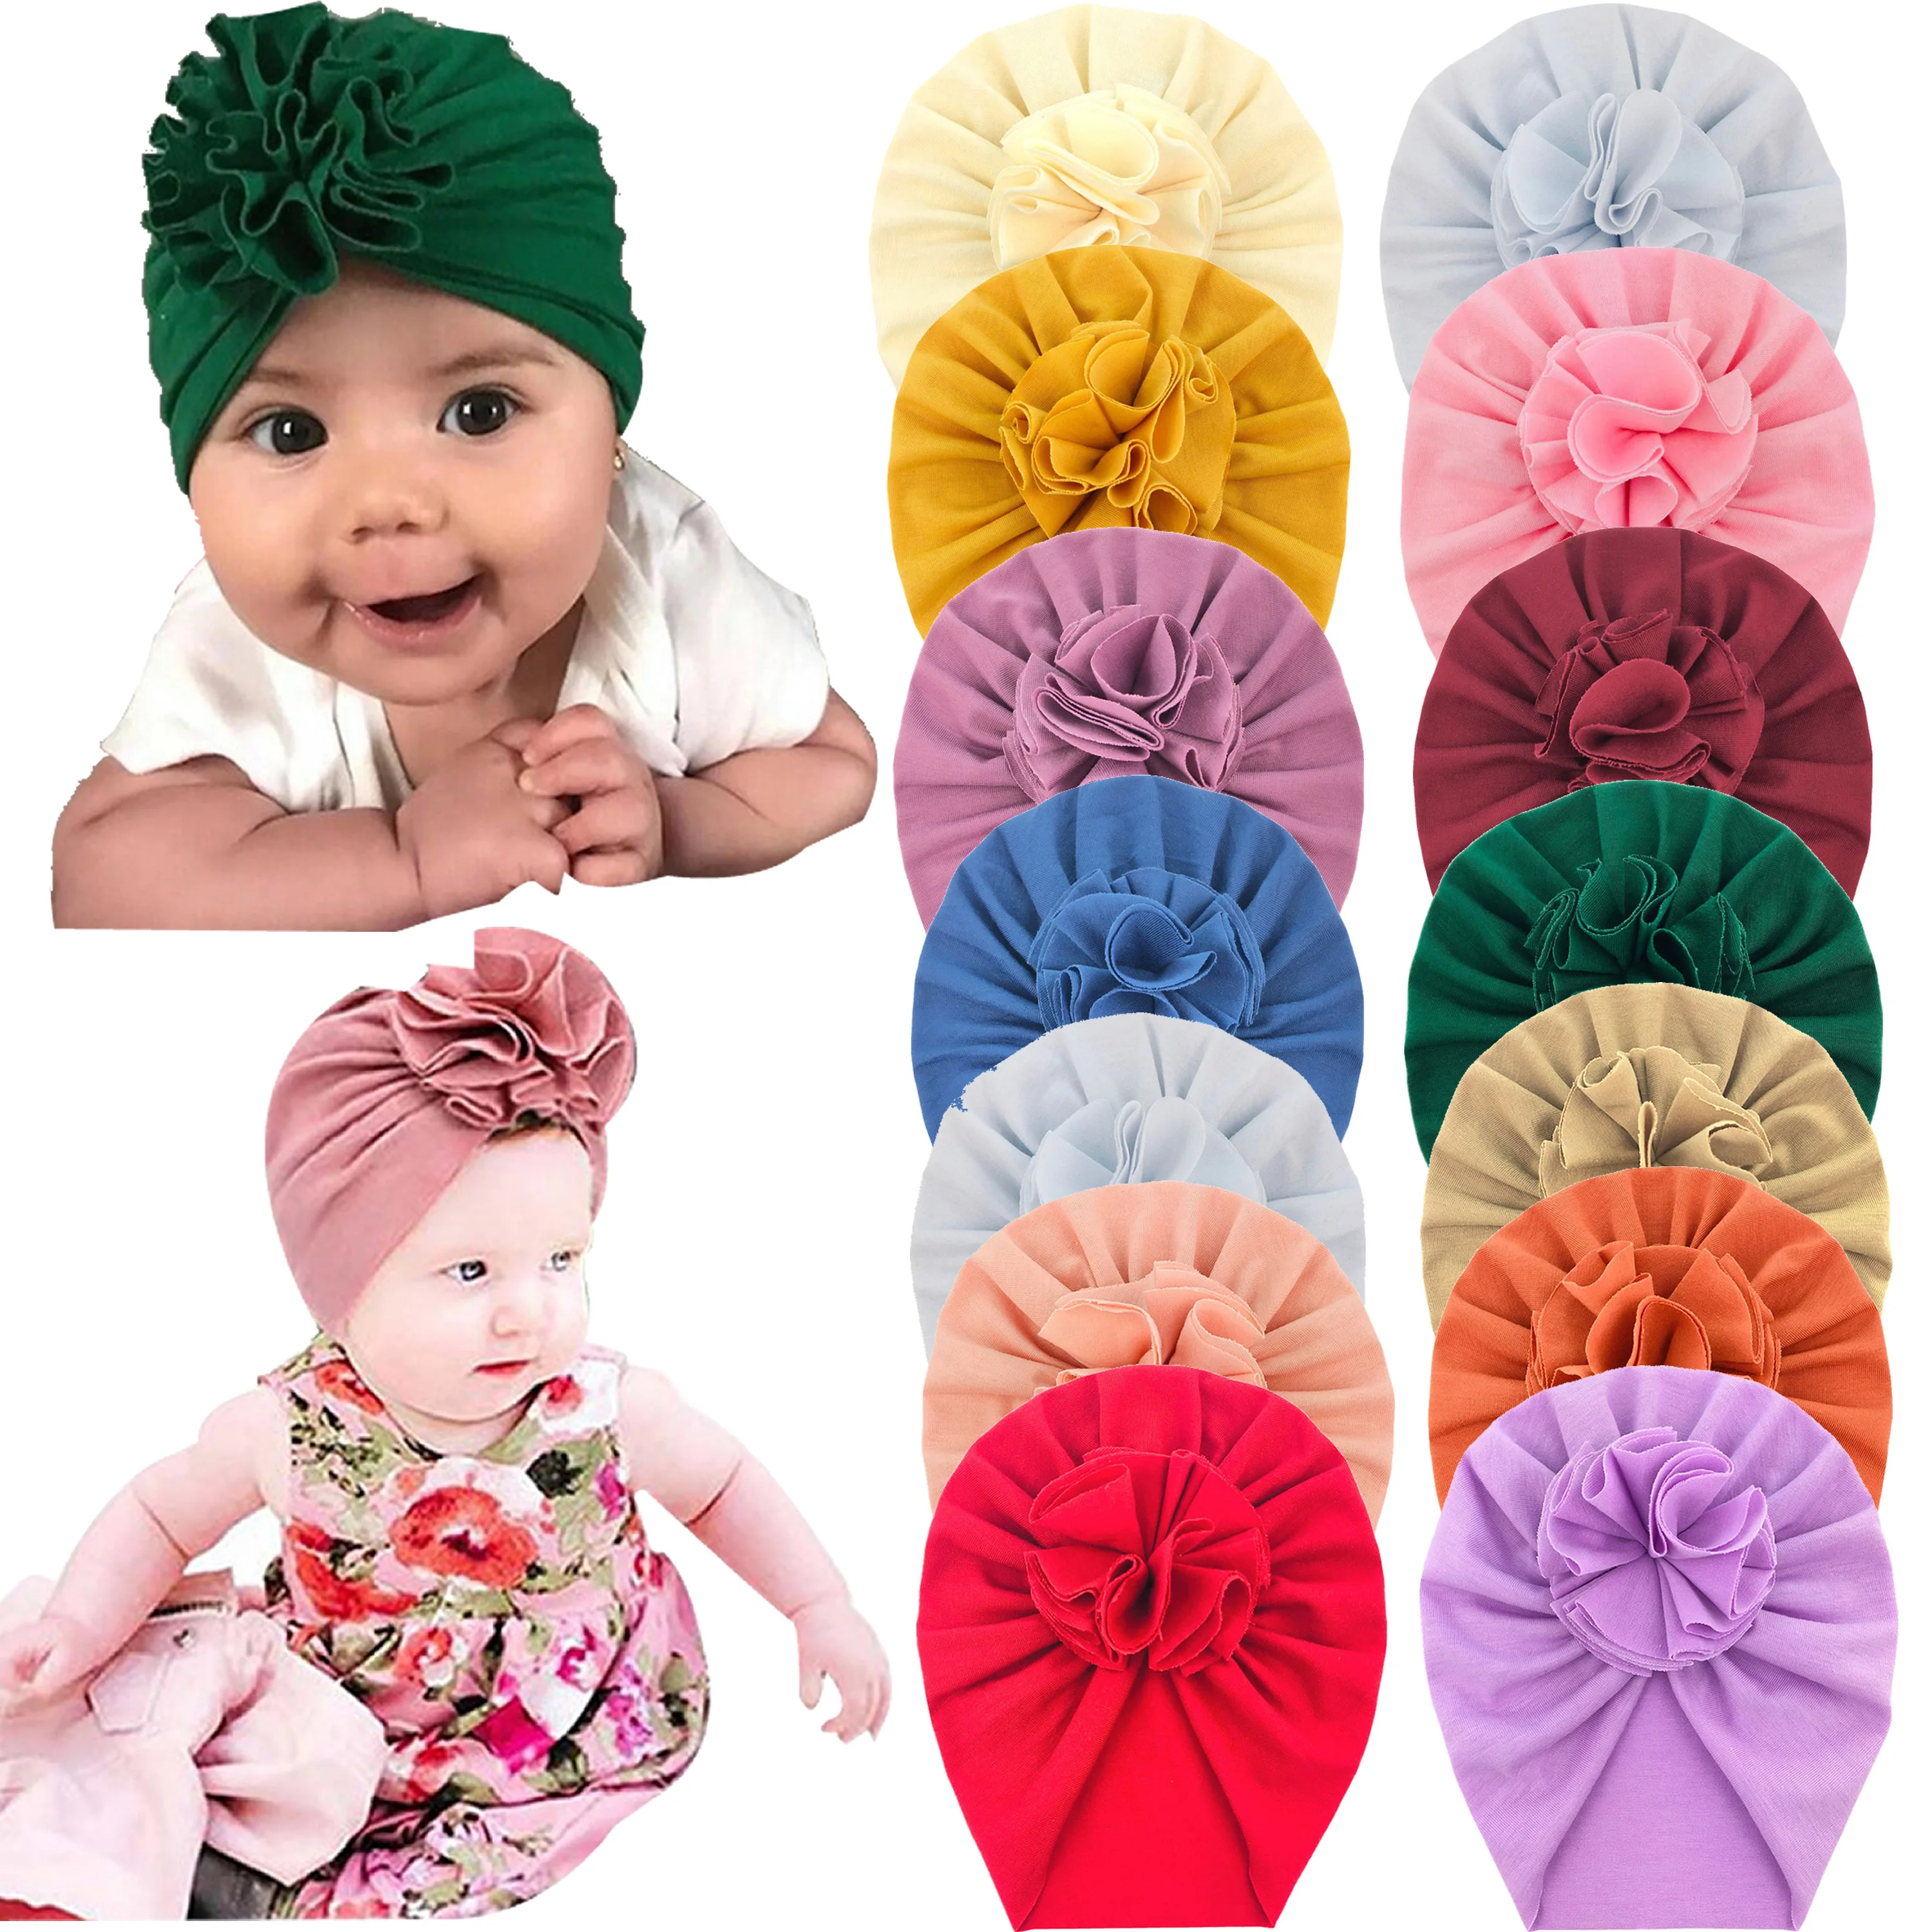 Оптовая продажа, однотонные индийские шапки с большими цветами, теплые вязаные шапки, детские шапки-тюрбаны, головные уборы, шапочка для маленьких девочек, малышей, детей